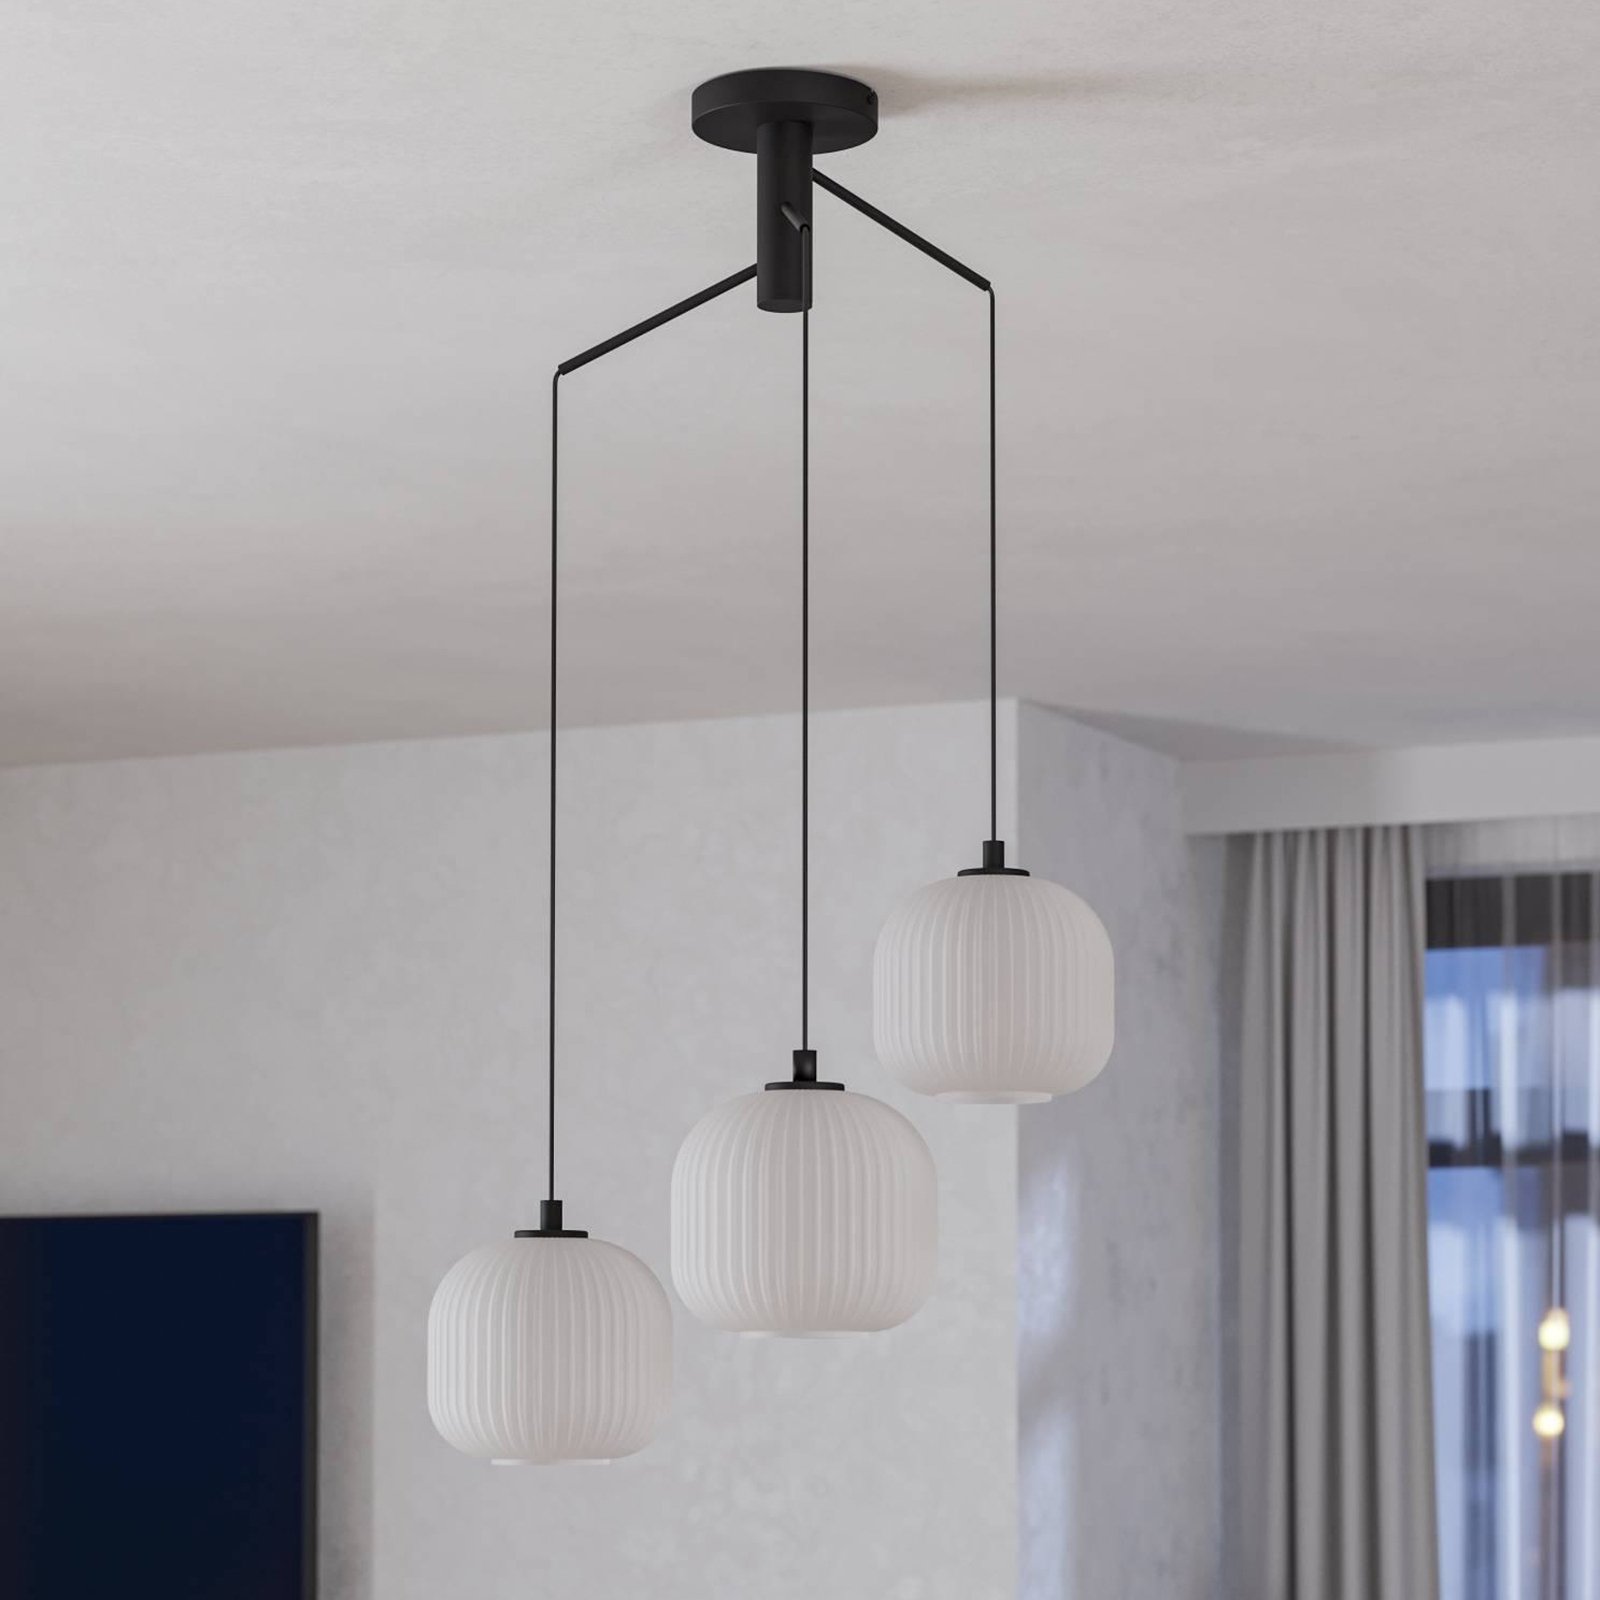 Mantunalle hængelampe, Ø 62 cm, sort/hvid, 3 lyskilder.